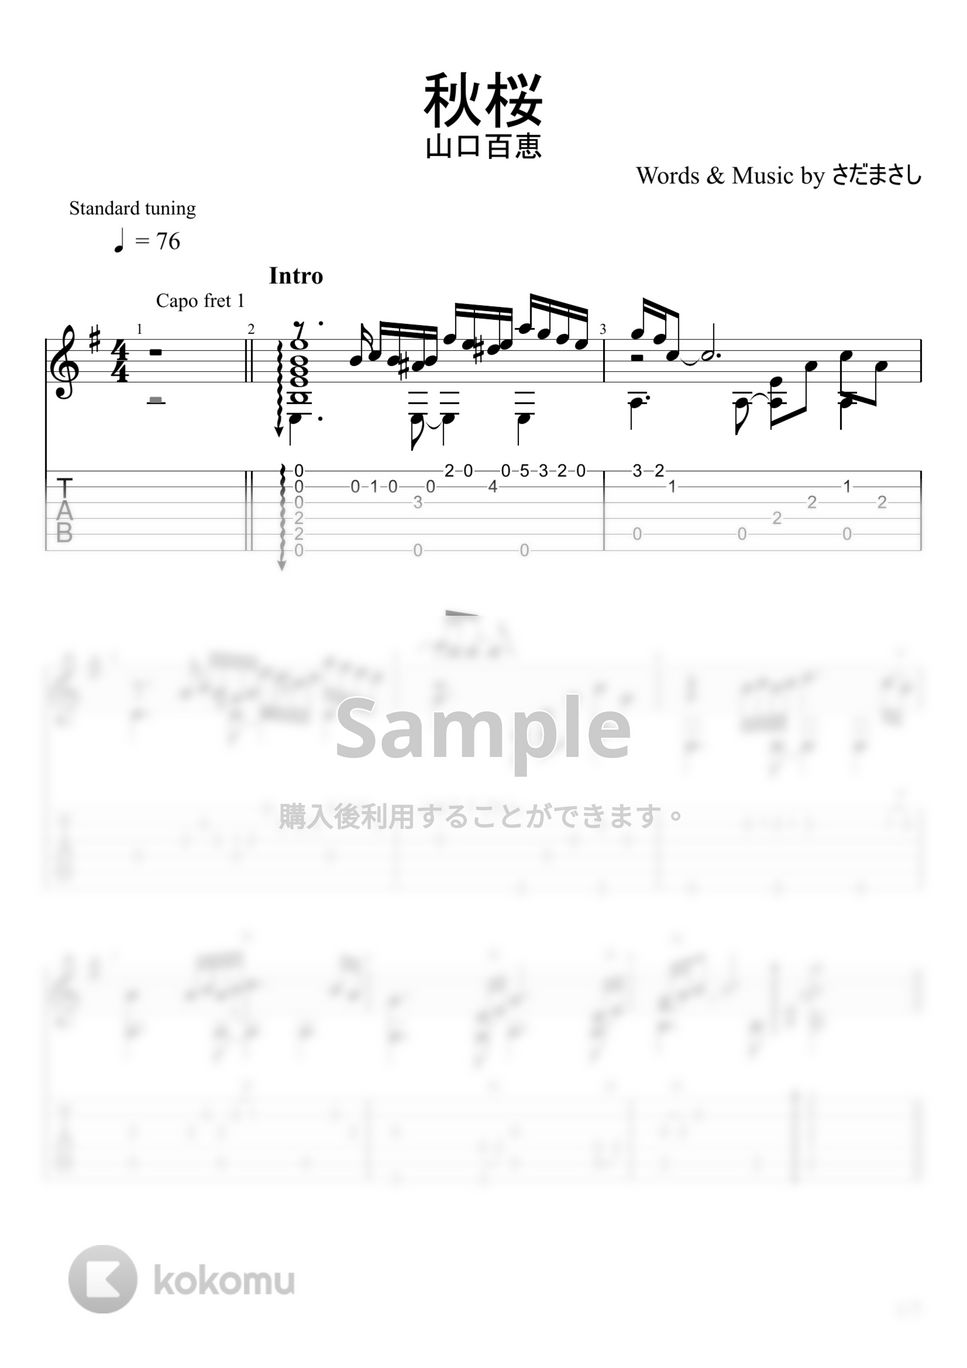 山口百恵 - 秋桜 (ソロギター) by u3danchou